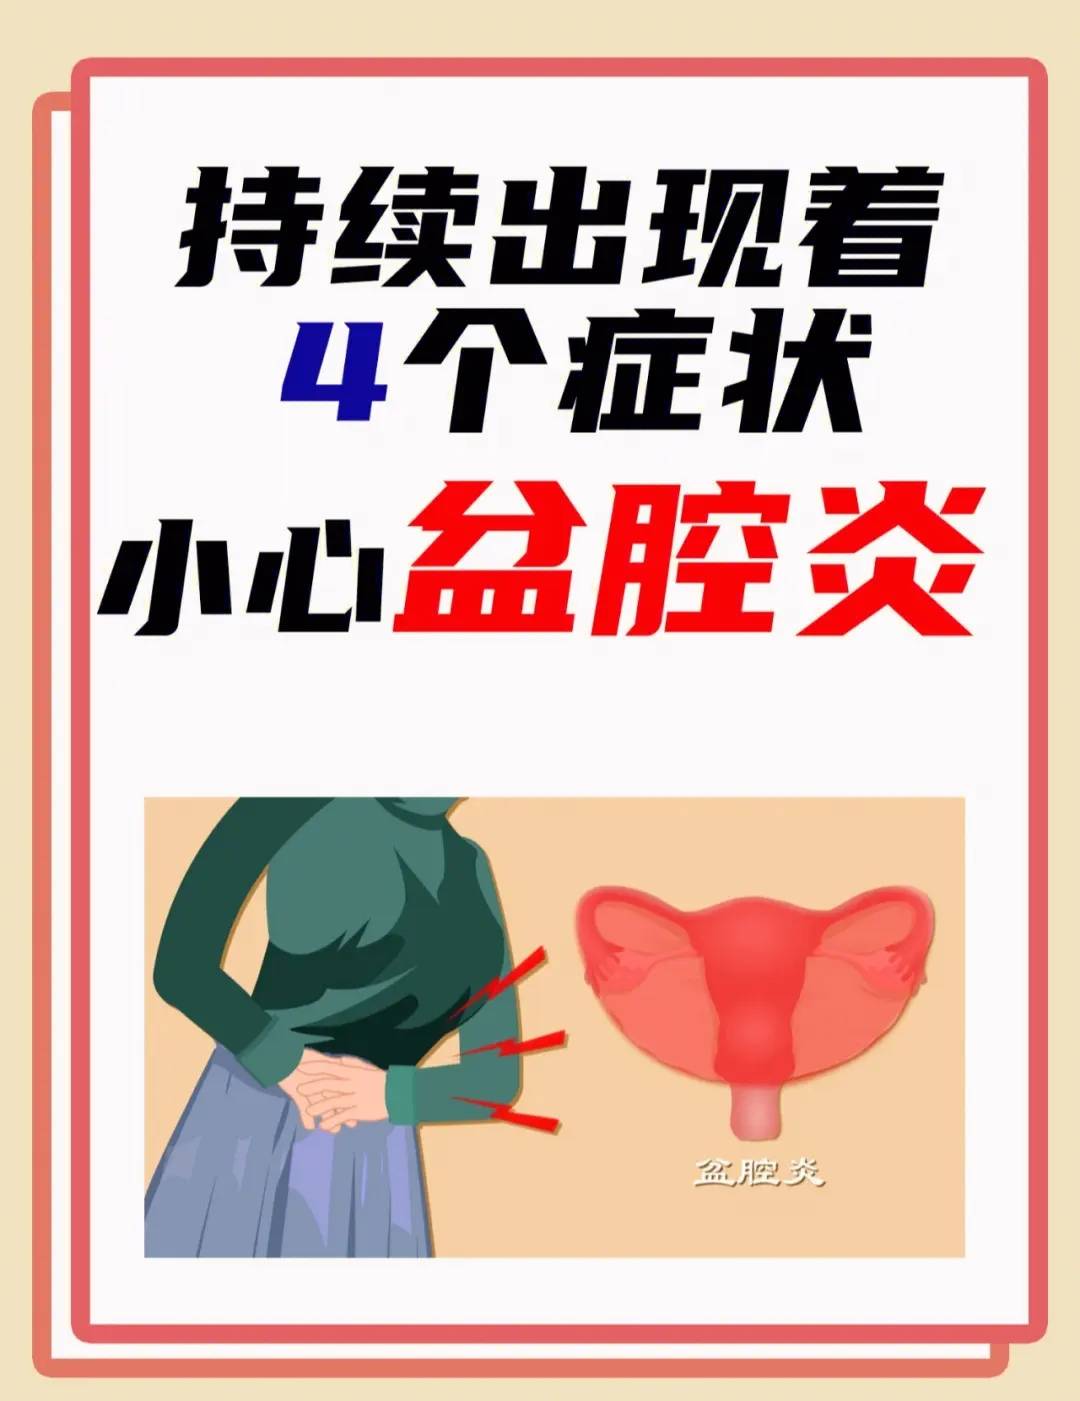 女性盆腔炎会出现哪些症状?杭州新城医院看妇科炎症如何?